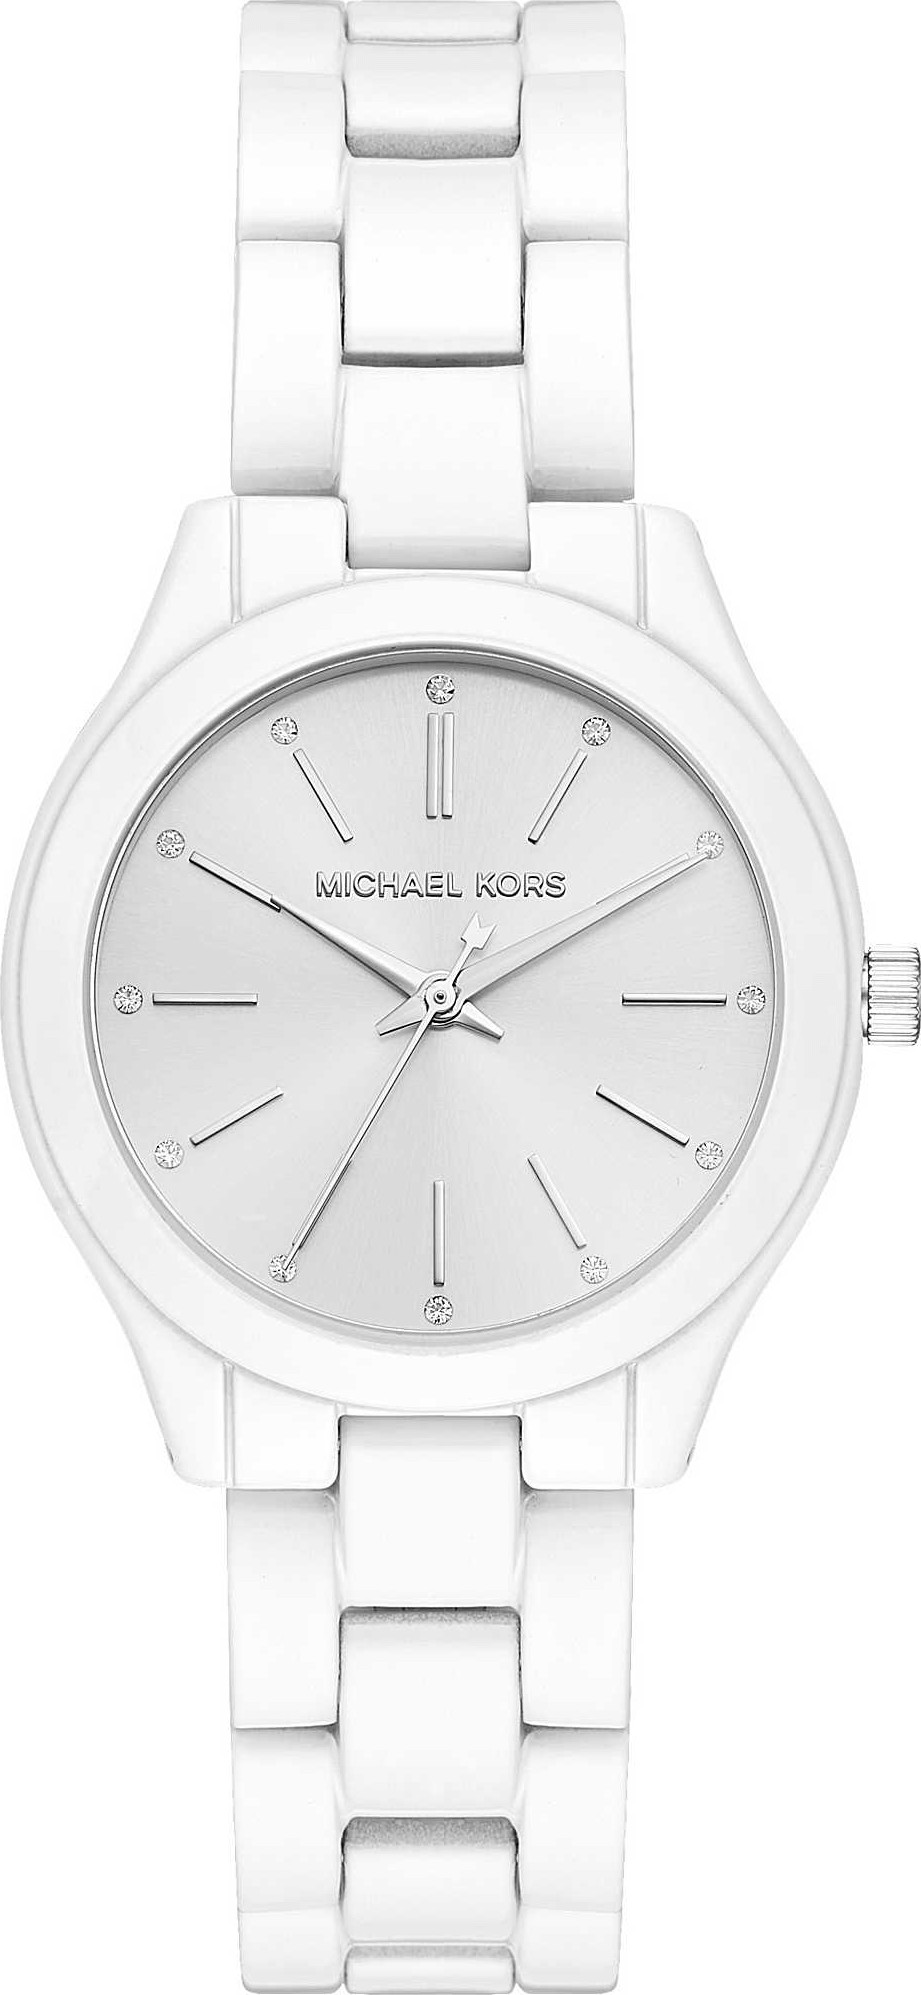 Michael Kors Mini Slim Runway Stainless Steel Watch MK3513  eBay